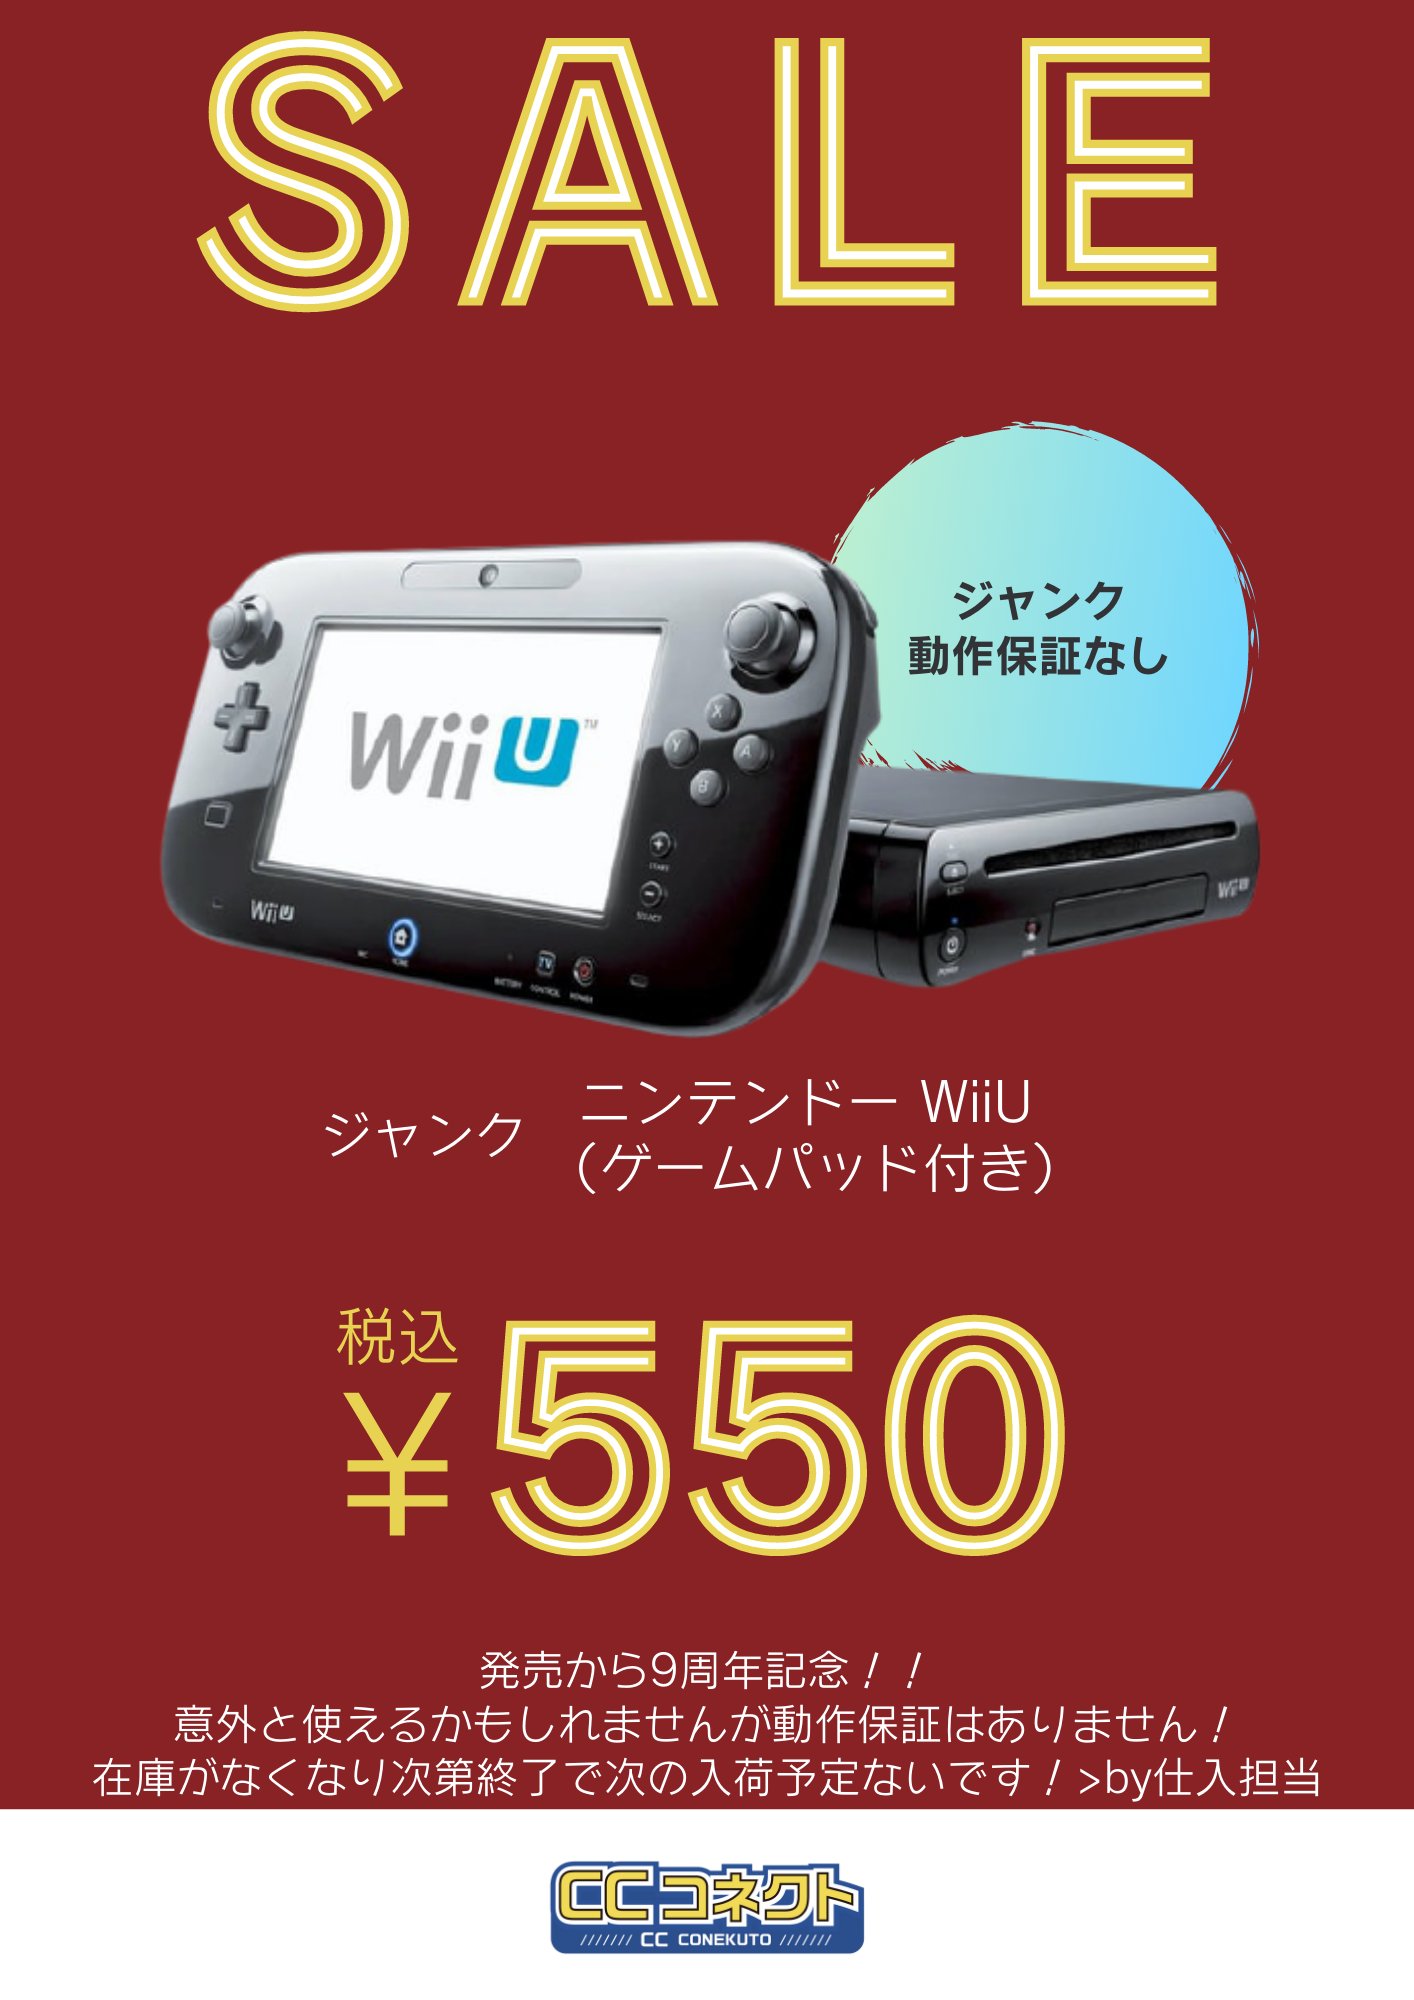 Ccコネクト秋葉原本店 今週のsaleです Wii U9周年ということで Wii U本体 ゲームパッドをお安くします 550 税込 1 900 そして 発注ミスにより大量入荷した Docomo版 Xperia1 So 03l 25 500 Au版sov40も値下げしてお出しします 23 800